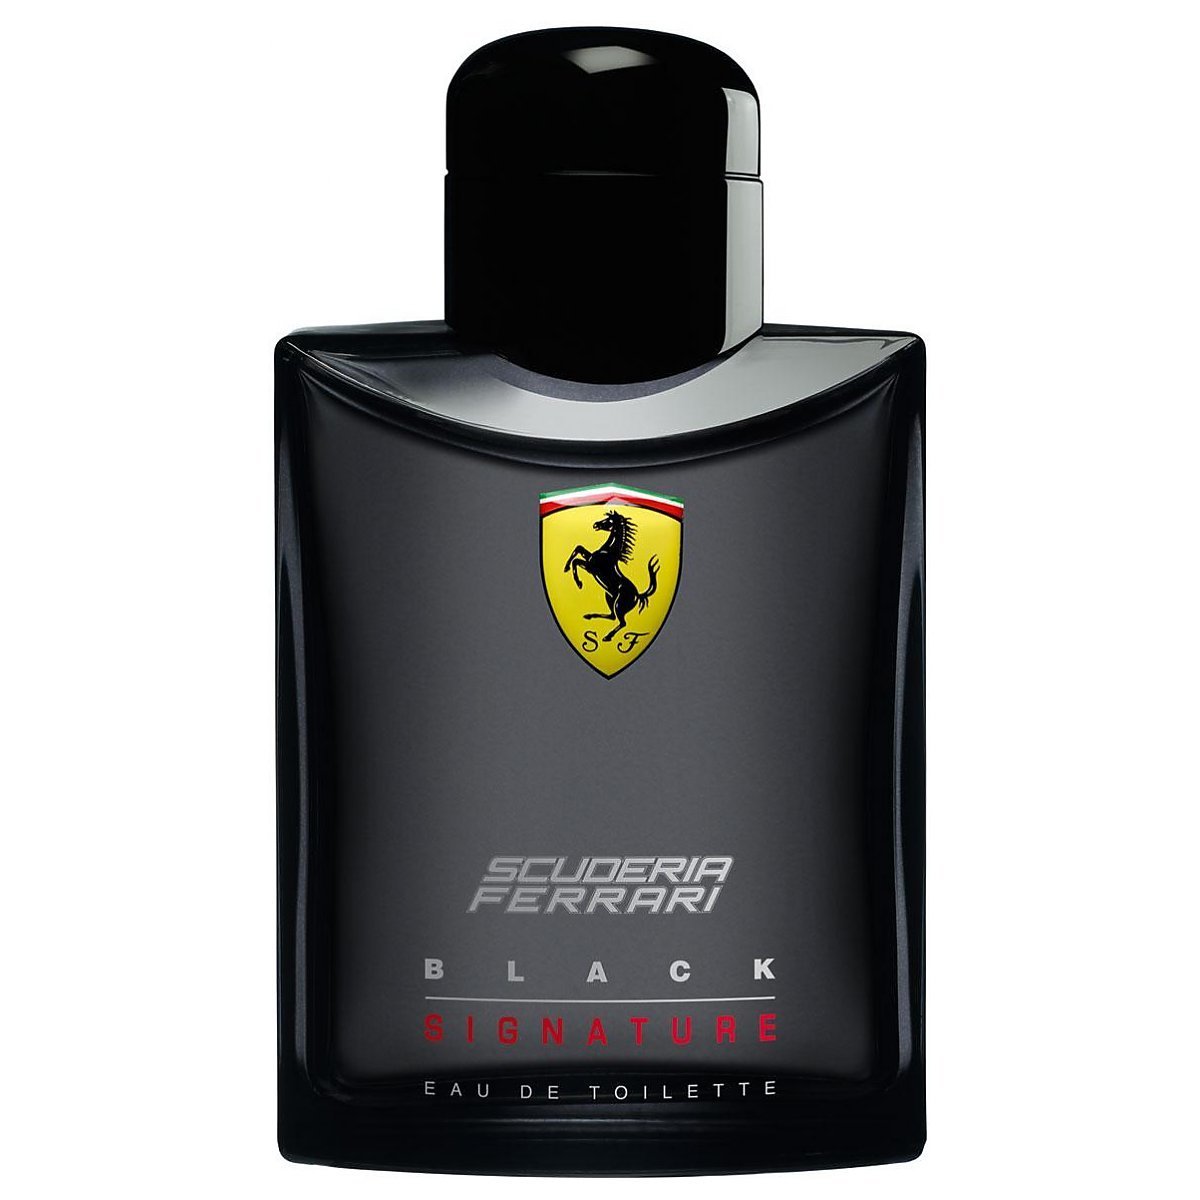 Scuderia Ferrari Black Signature Woda toaletowa spray 125ml ...